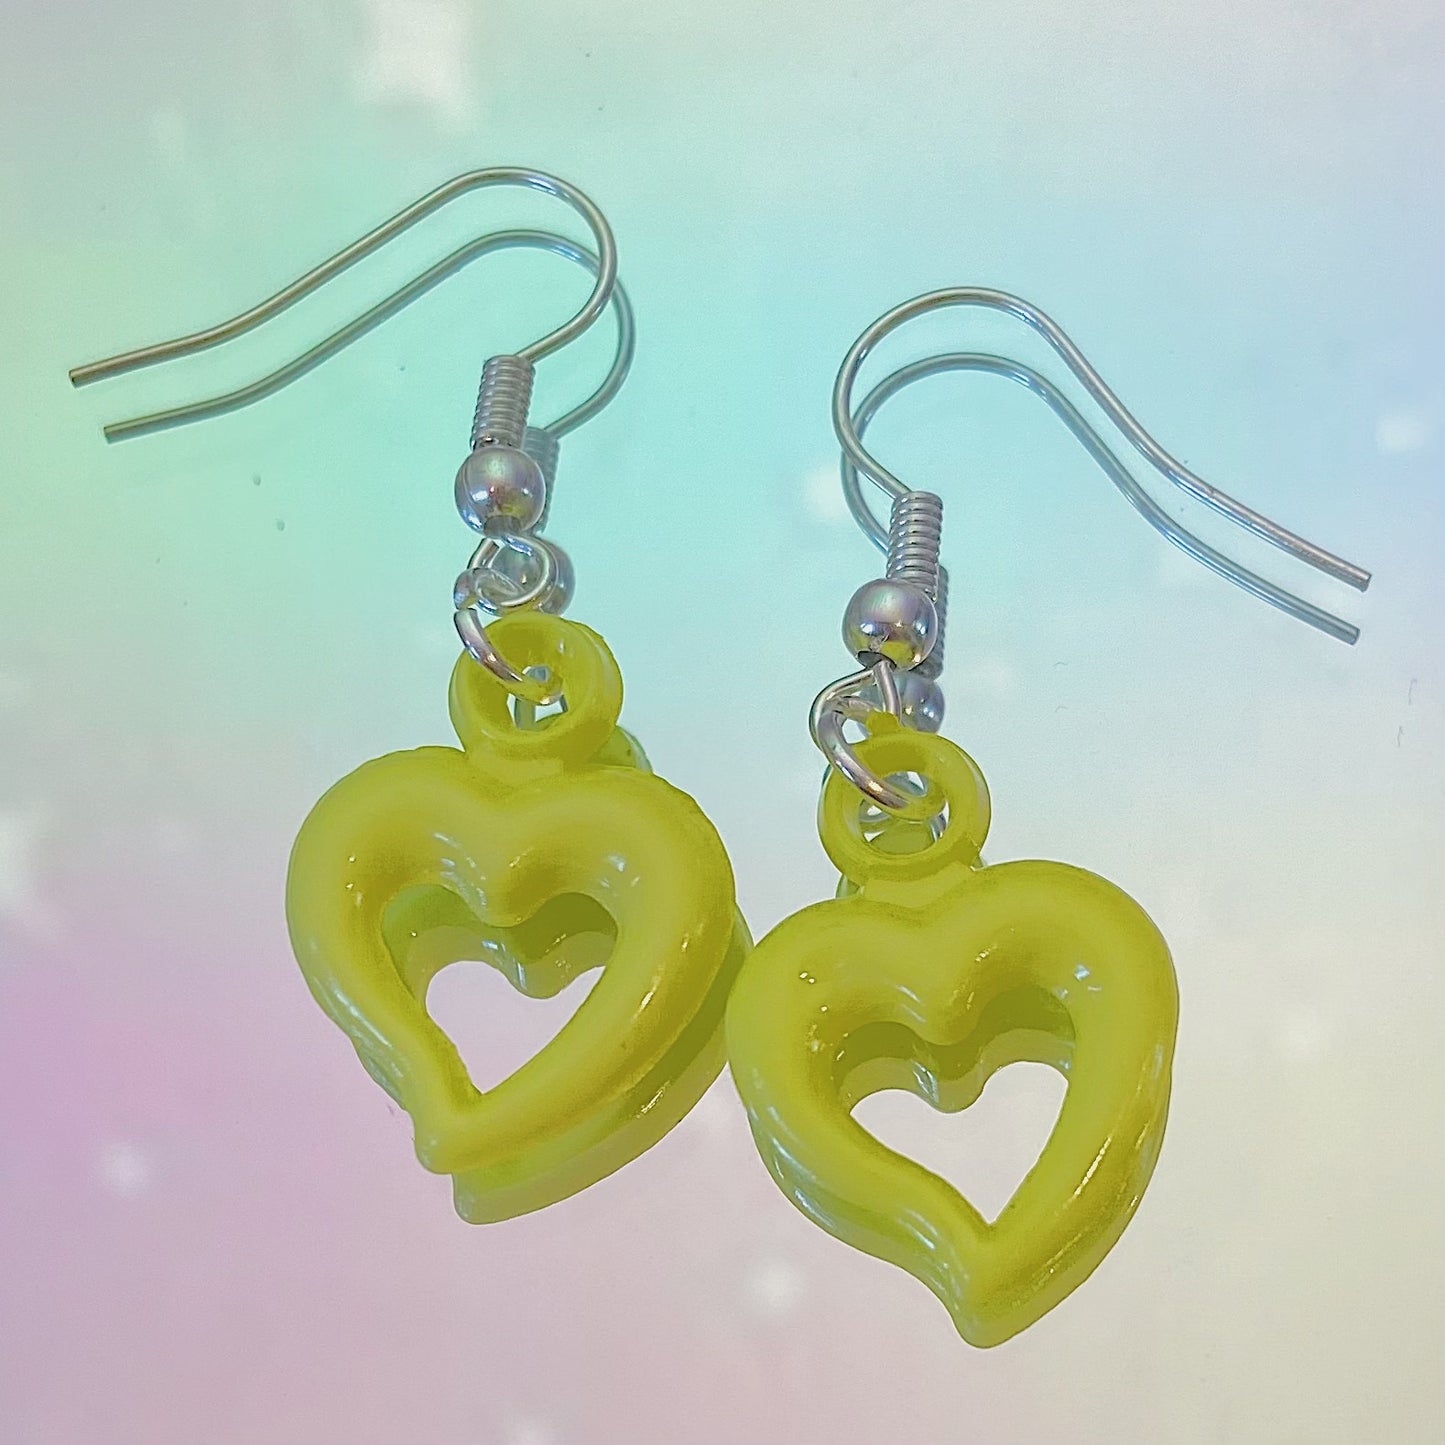 Yellow Heart Earrings